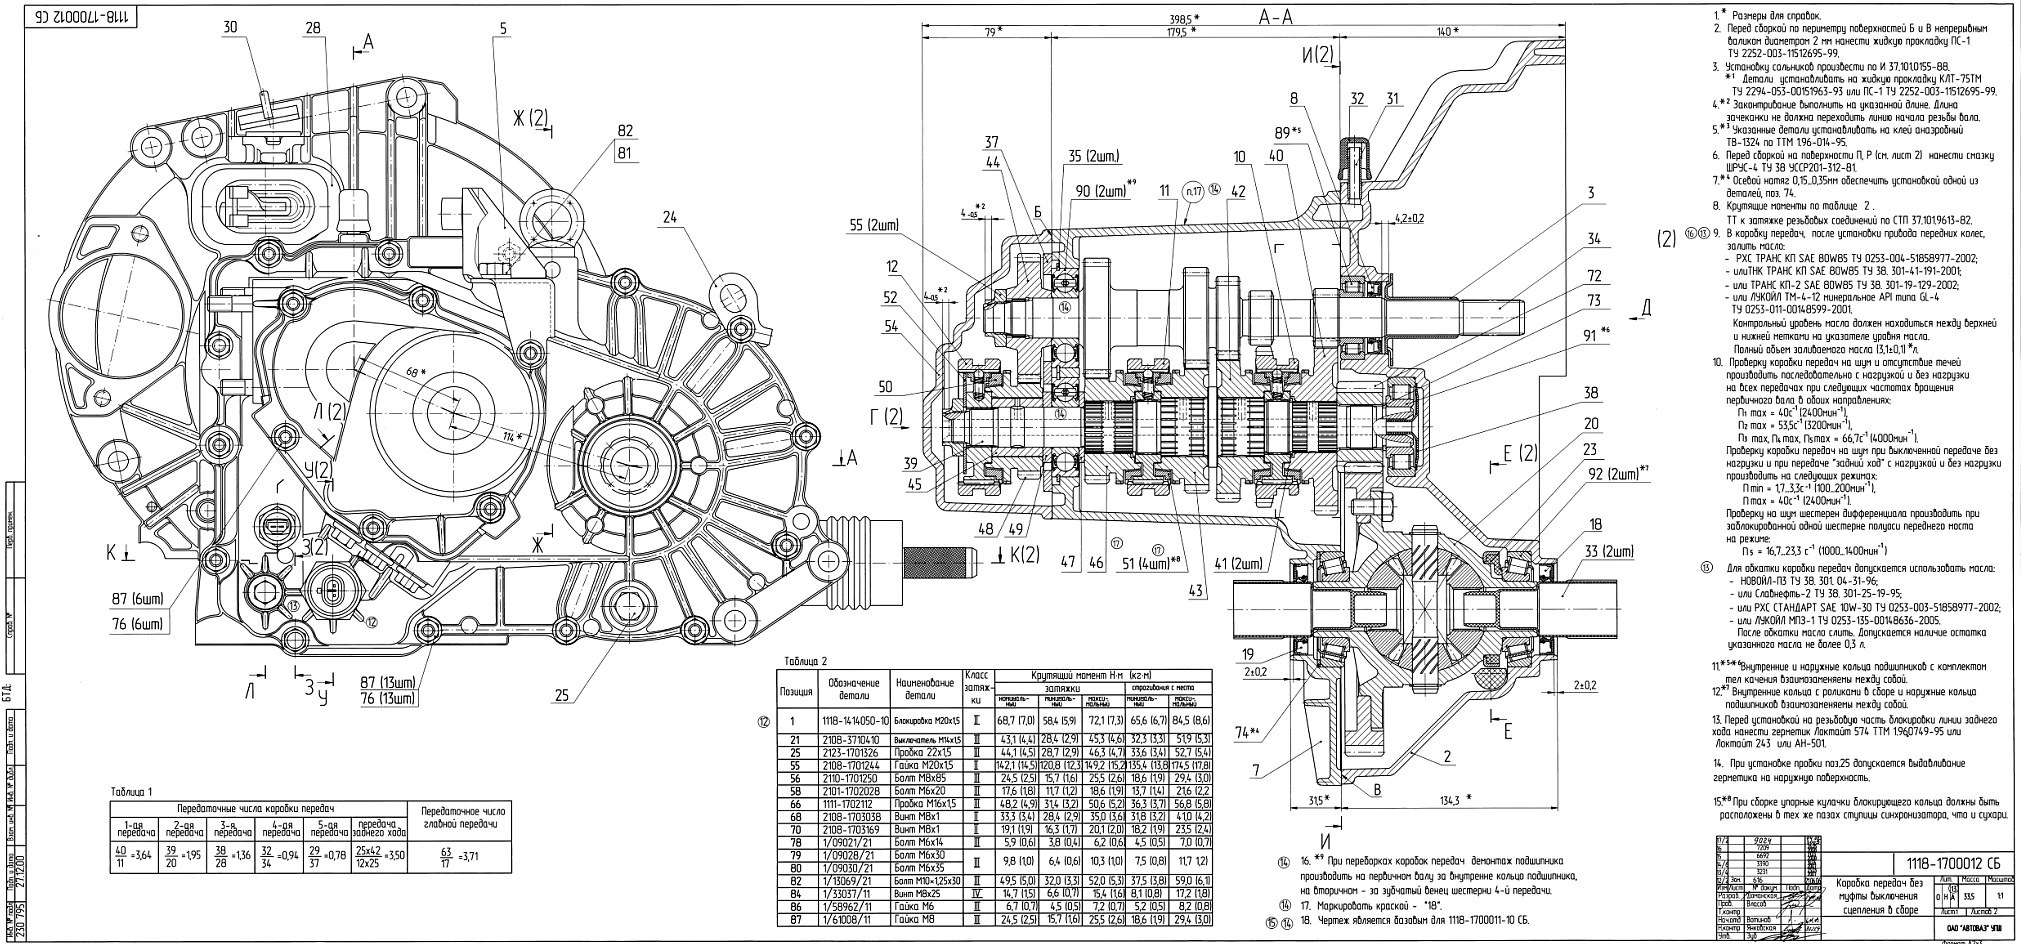 Инструкция по эксплуатации дизель- генераторной установки